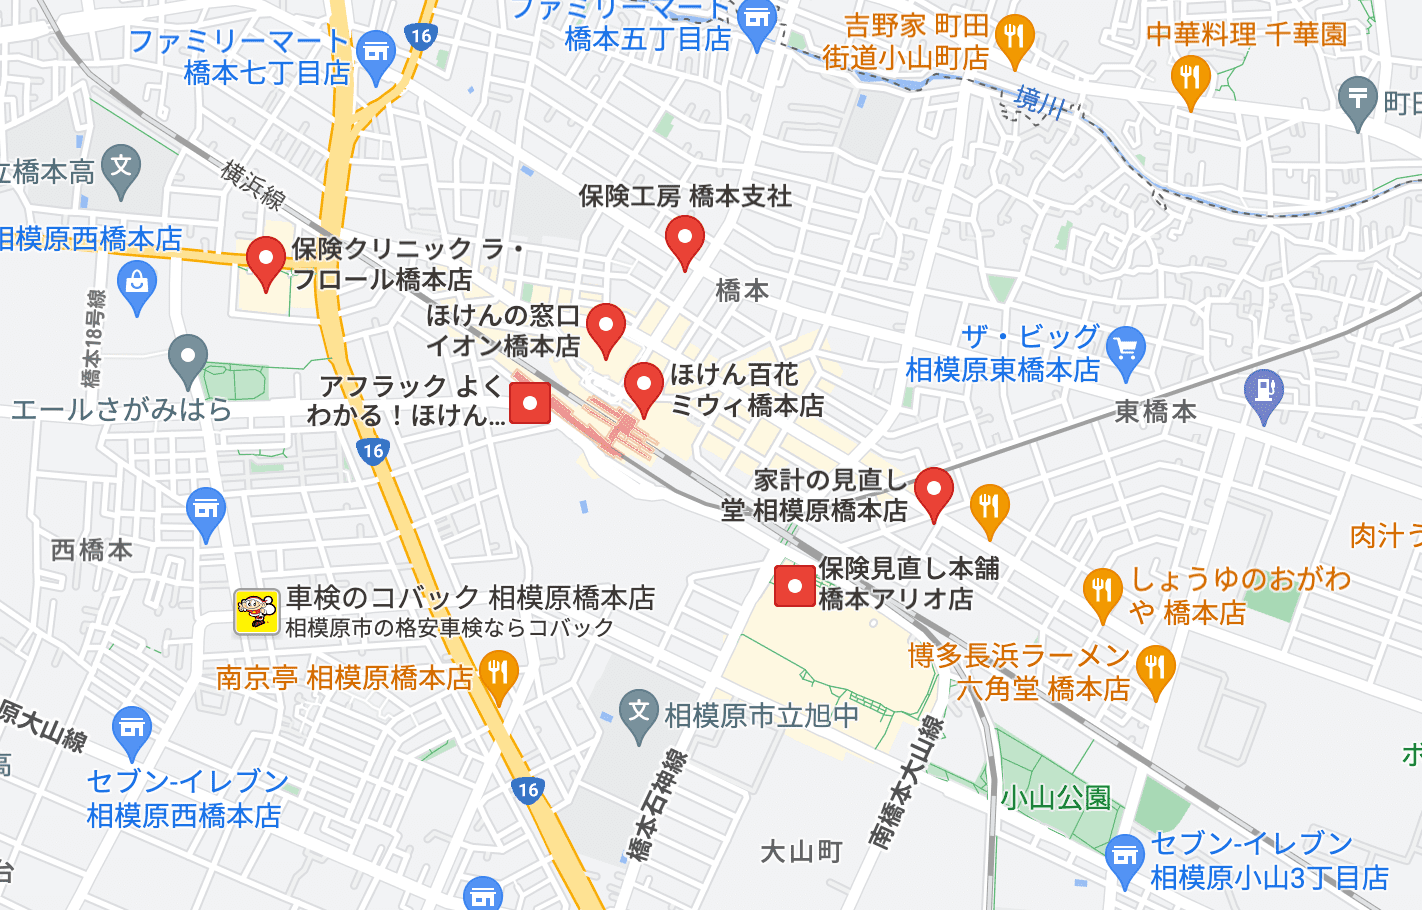 橋本駅 無料保険相談 おすすめの駅周辺店舗の口コミを一覧にして比較